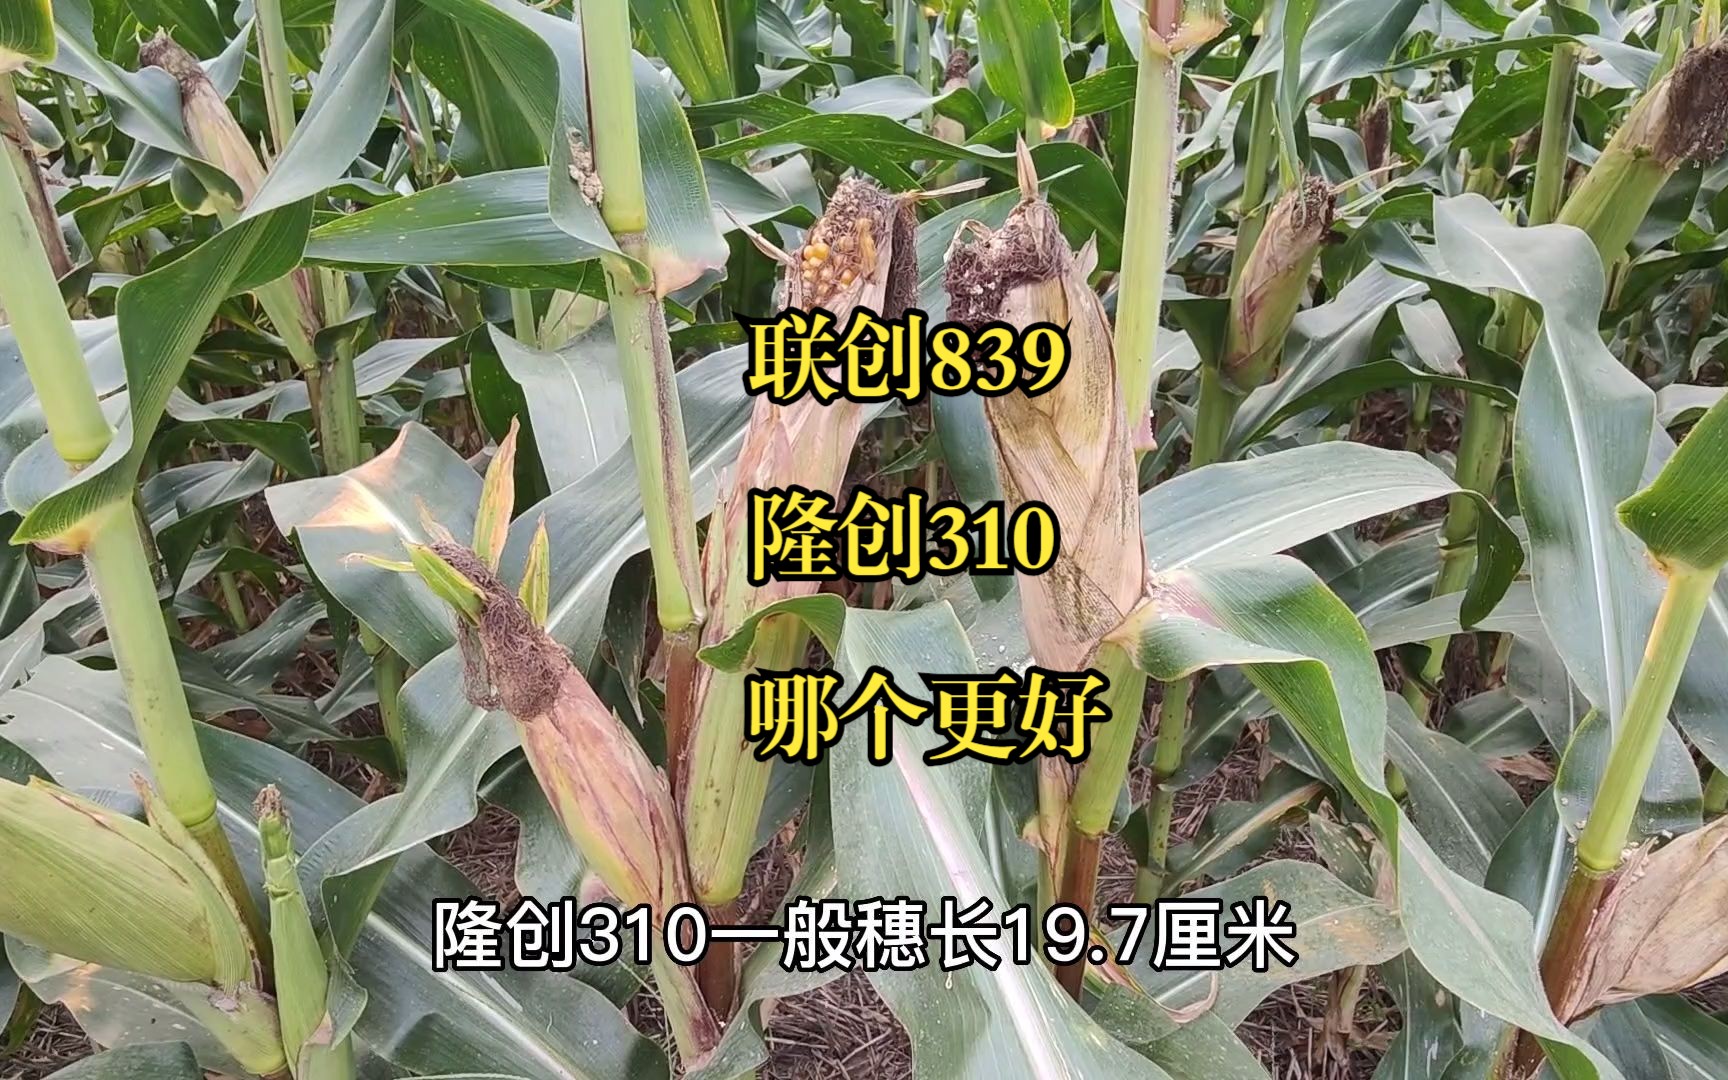 联创839与隆创310,这两个玉米品种,哪个品种更好